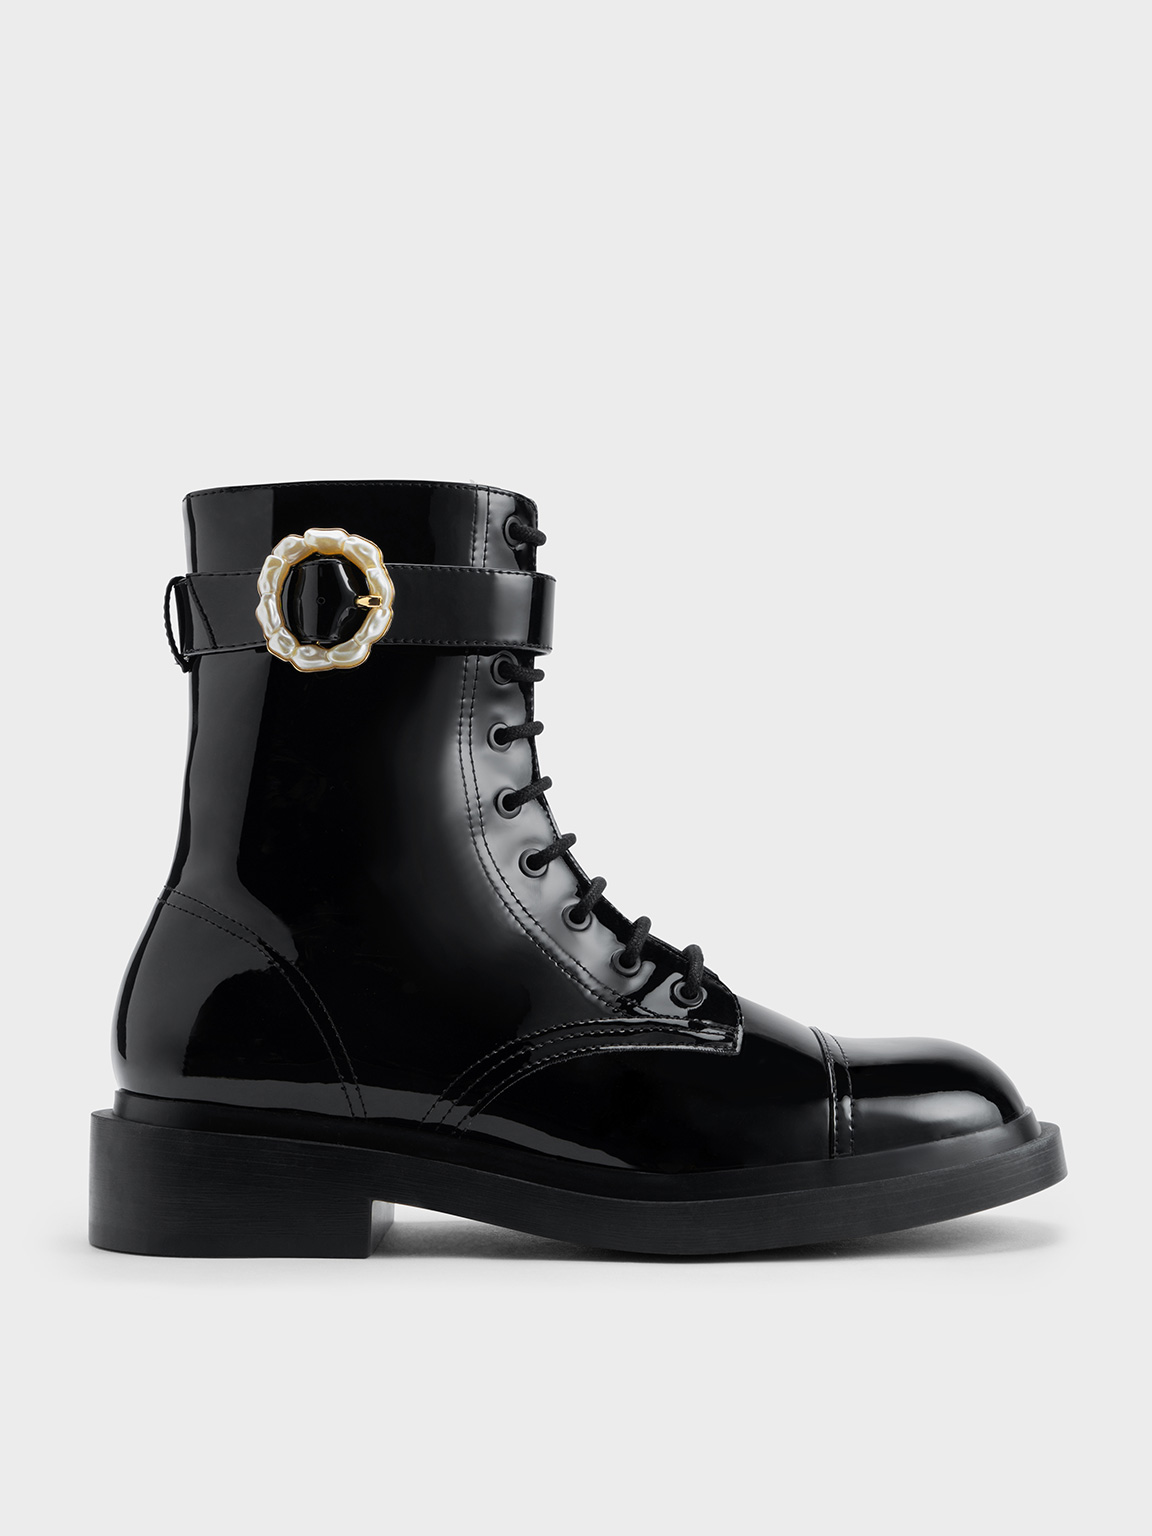 Vintage Louis Vuitton Classic Shoes Size 8 1/2 Black Leather -  Finland